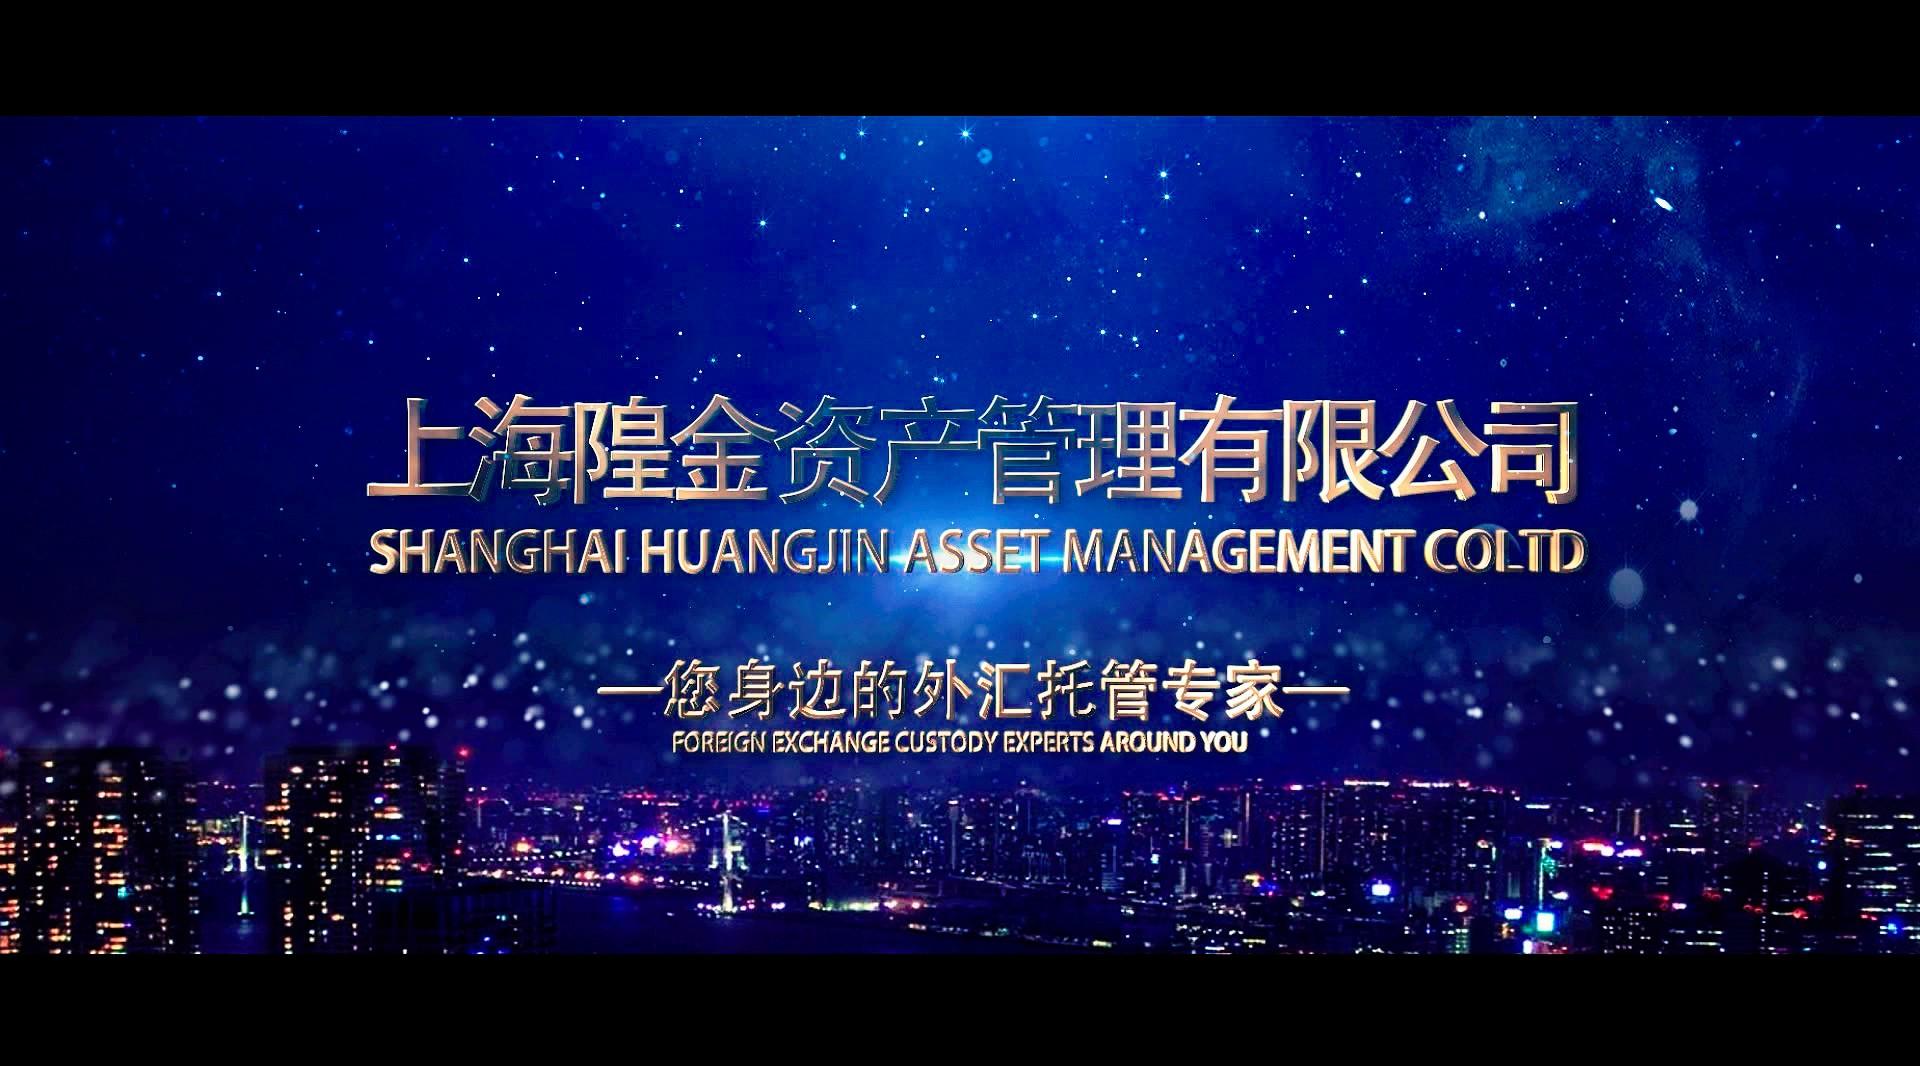 上海隍金资产管理有限公司宣传片   Shanghai Huangjin Asset